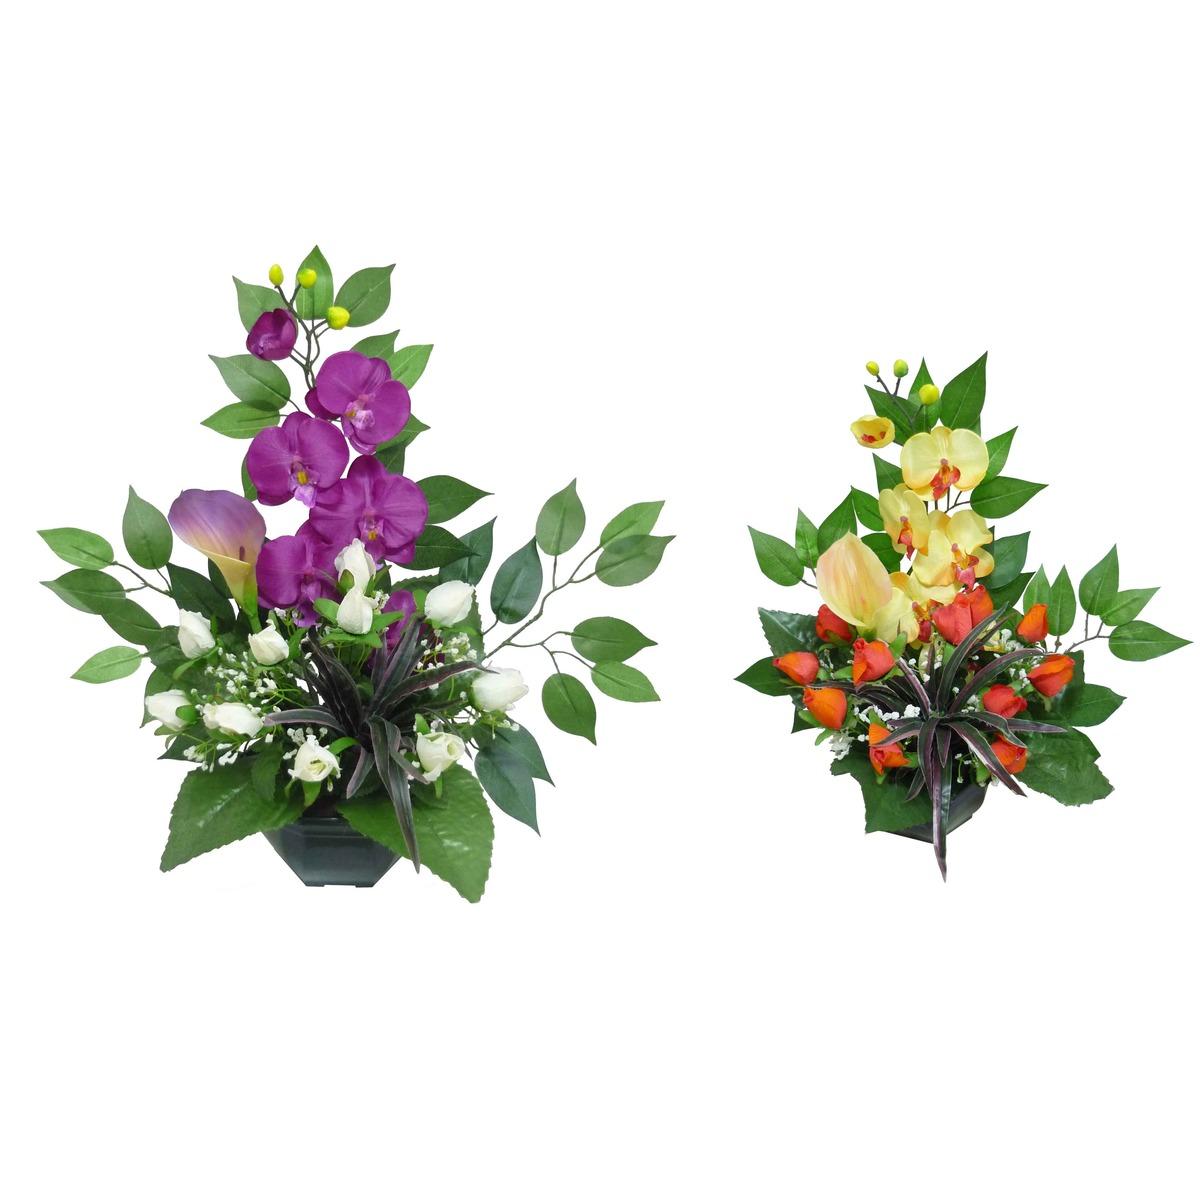 Coupe de roses + arums + orchidées + ficus - Hauteur 53 cm - Différents modèles